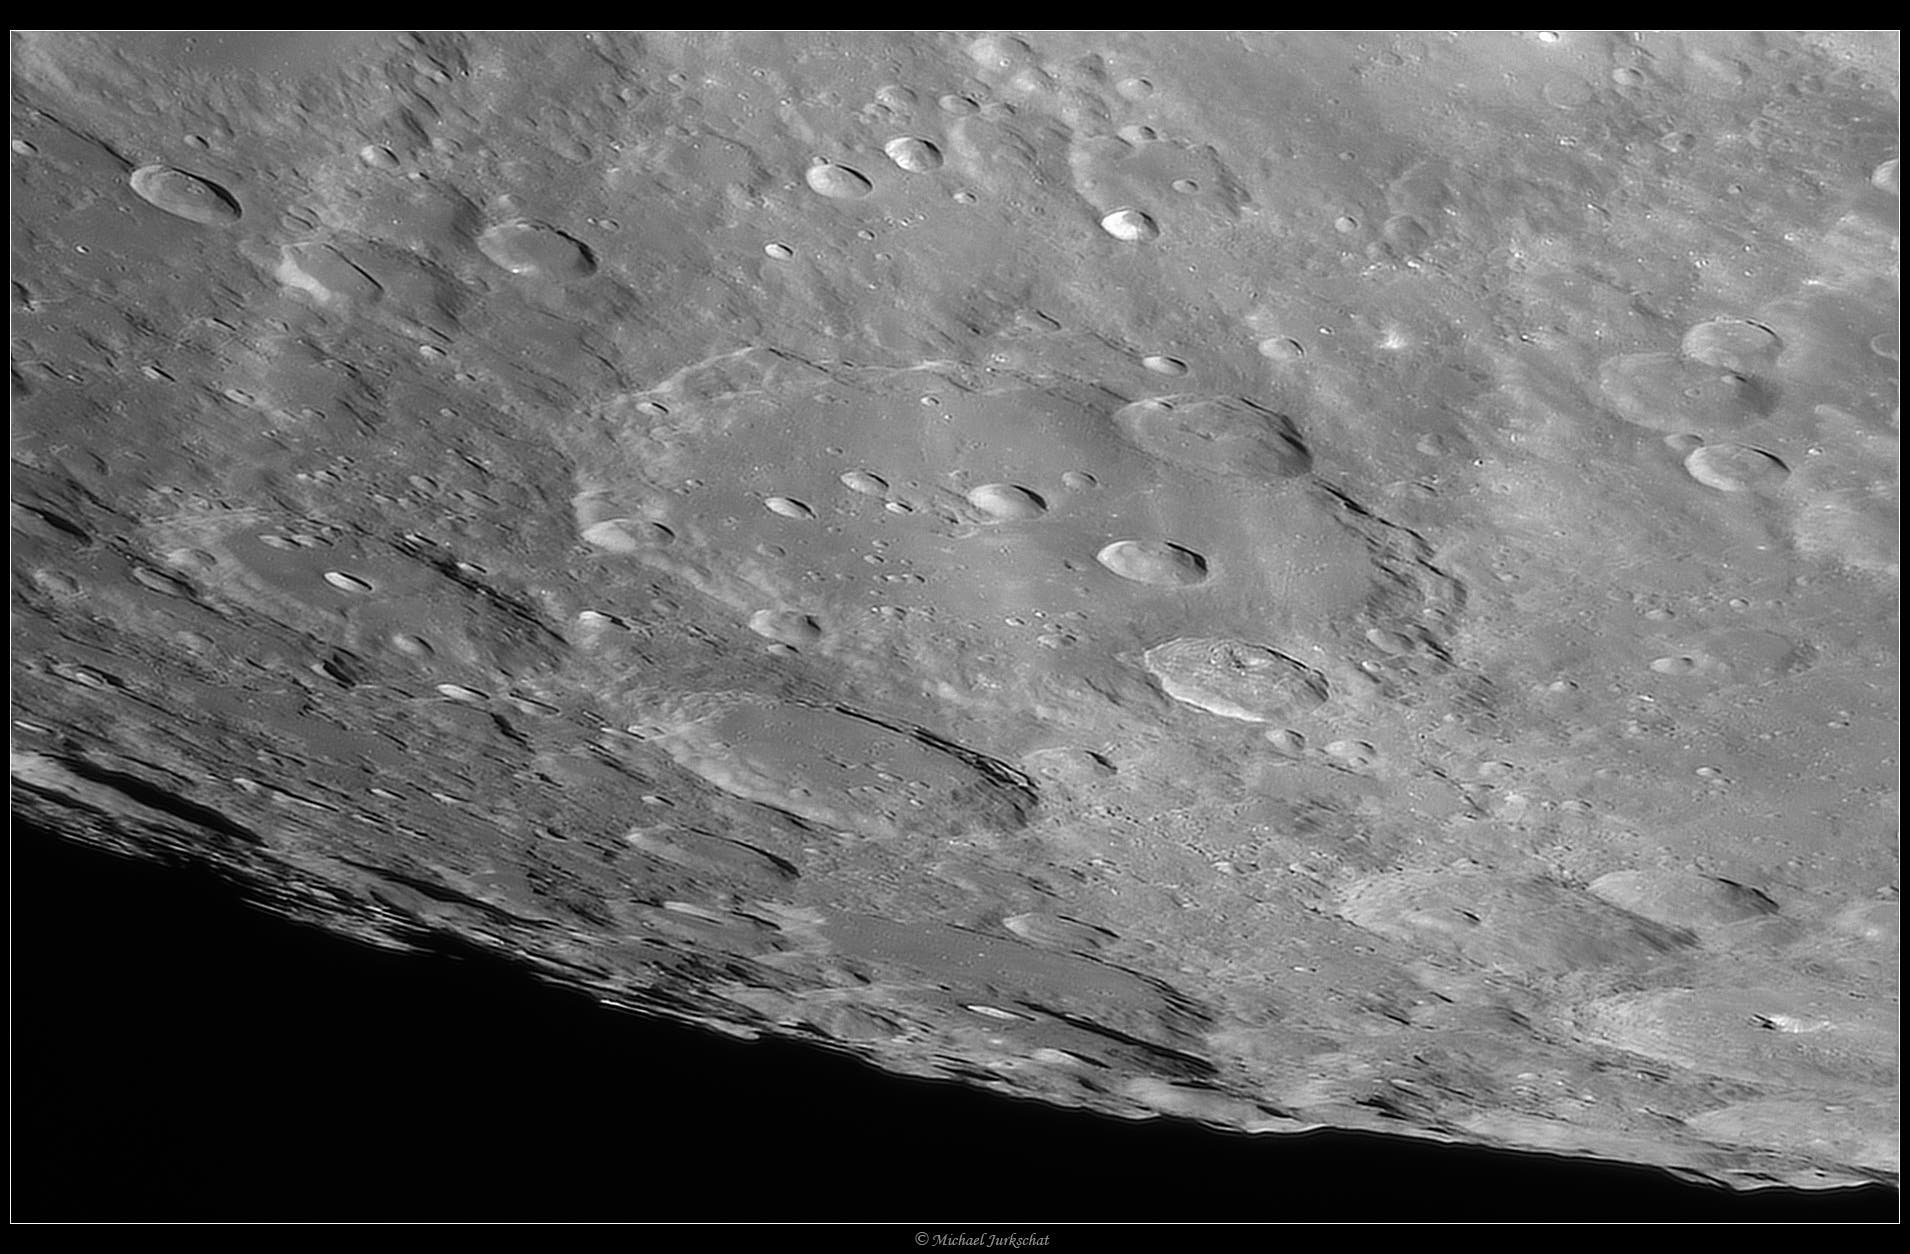 Clavius-Krater